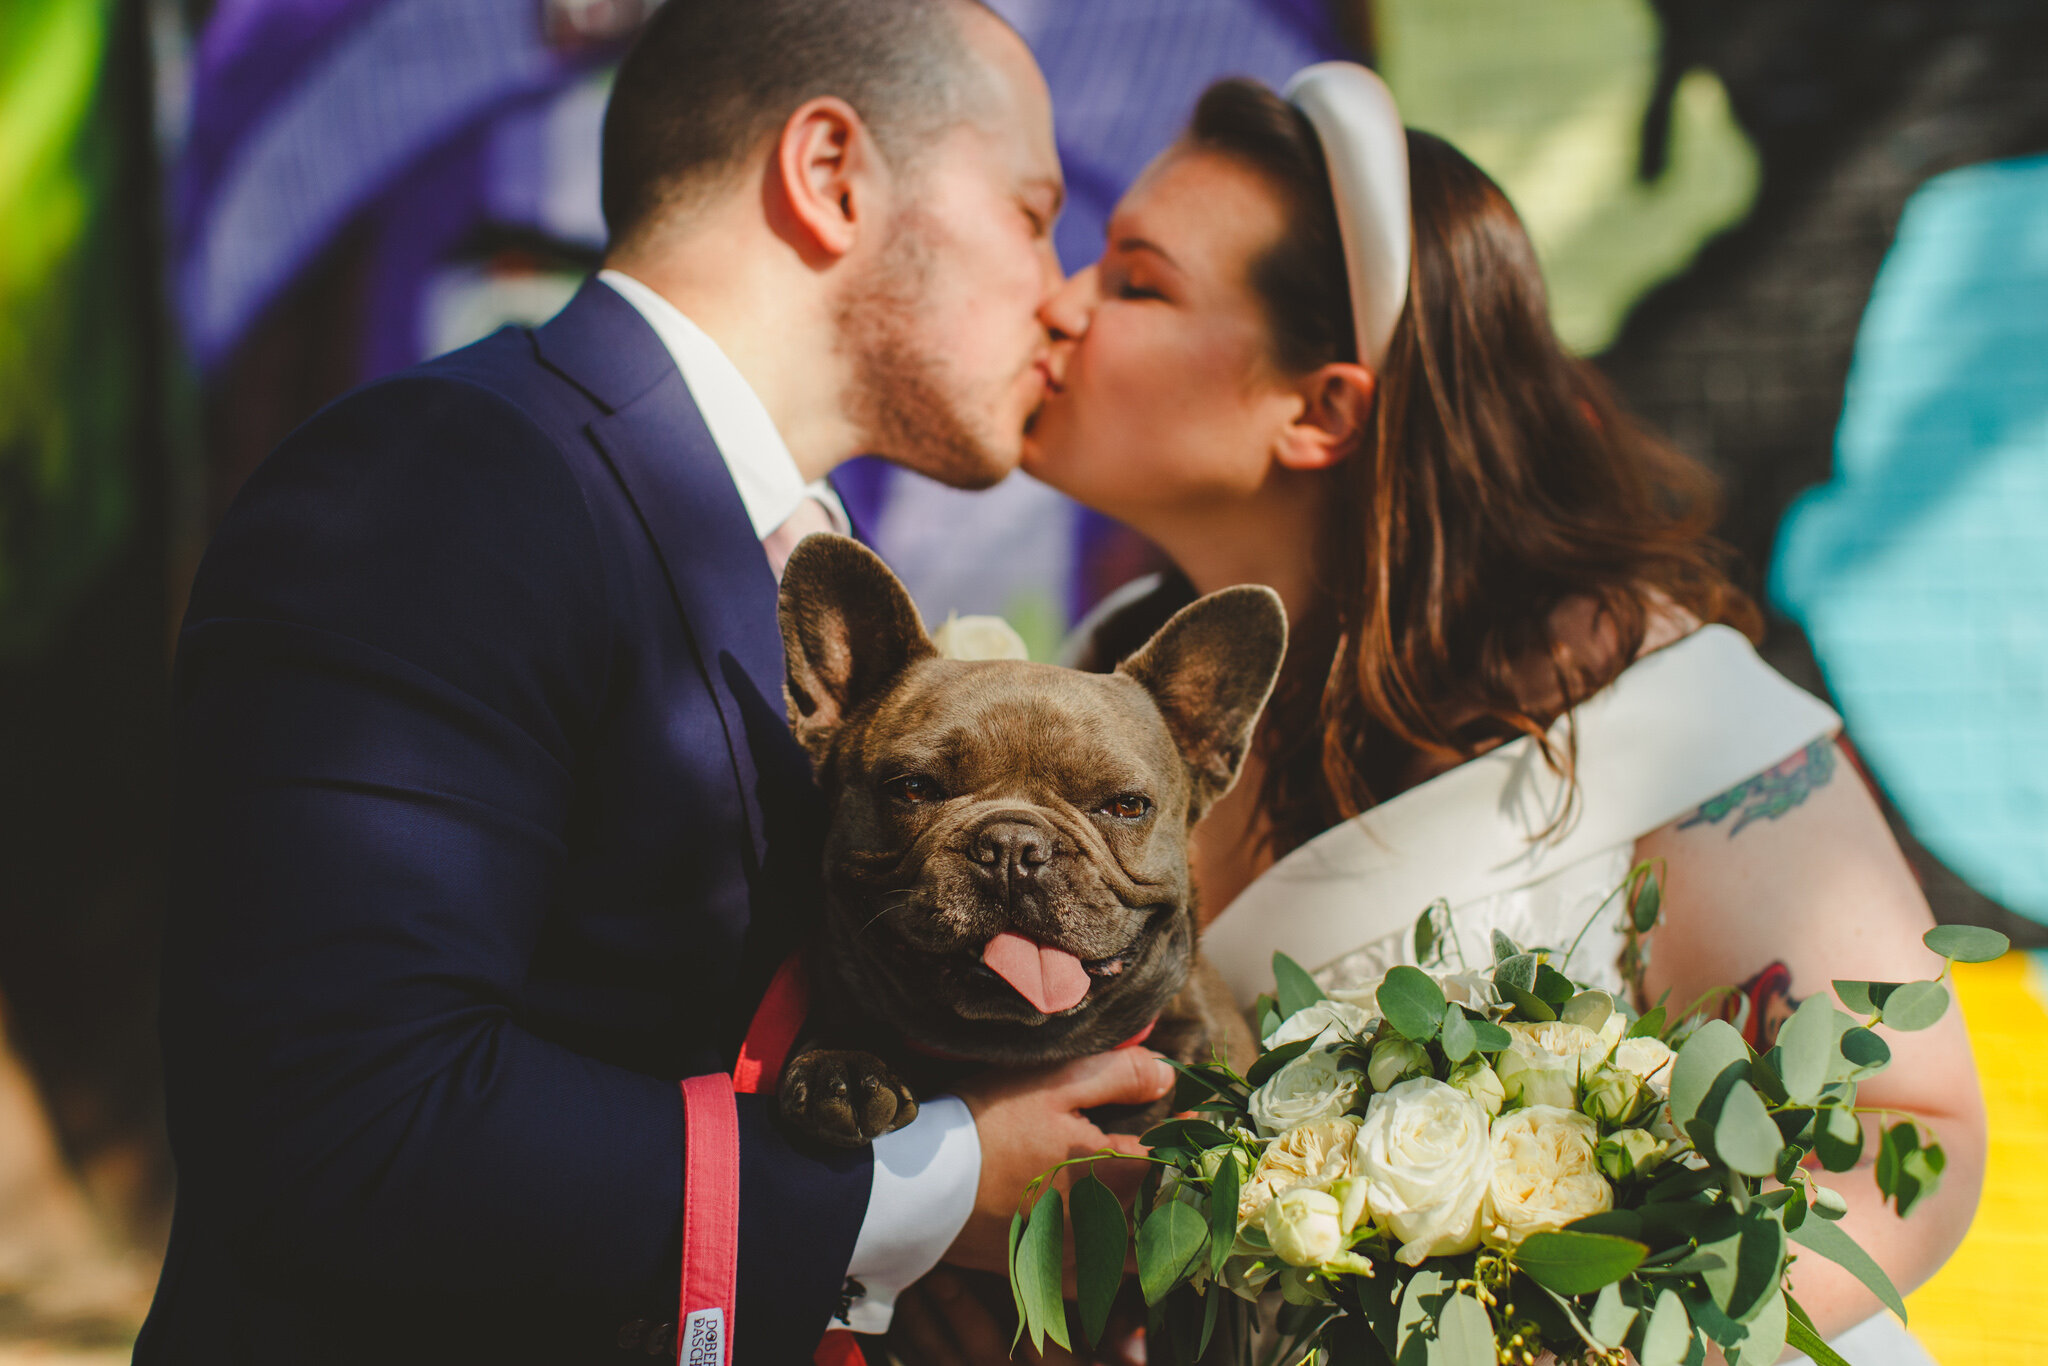 derbyshire-wedding-elopement-photographer-best-2020-5.jpg